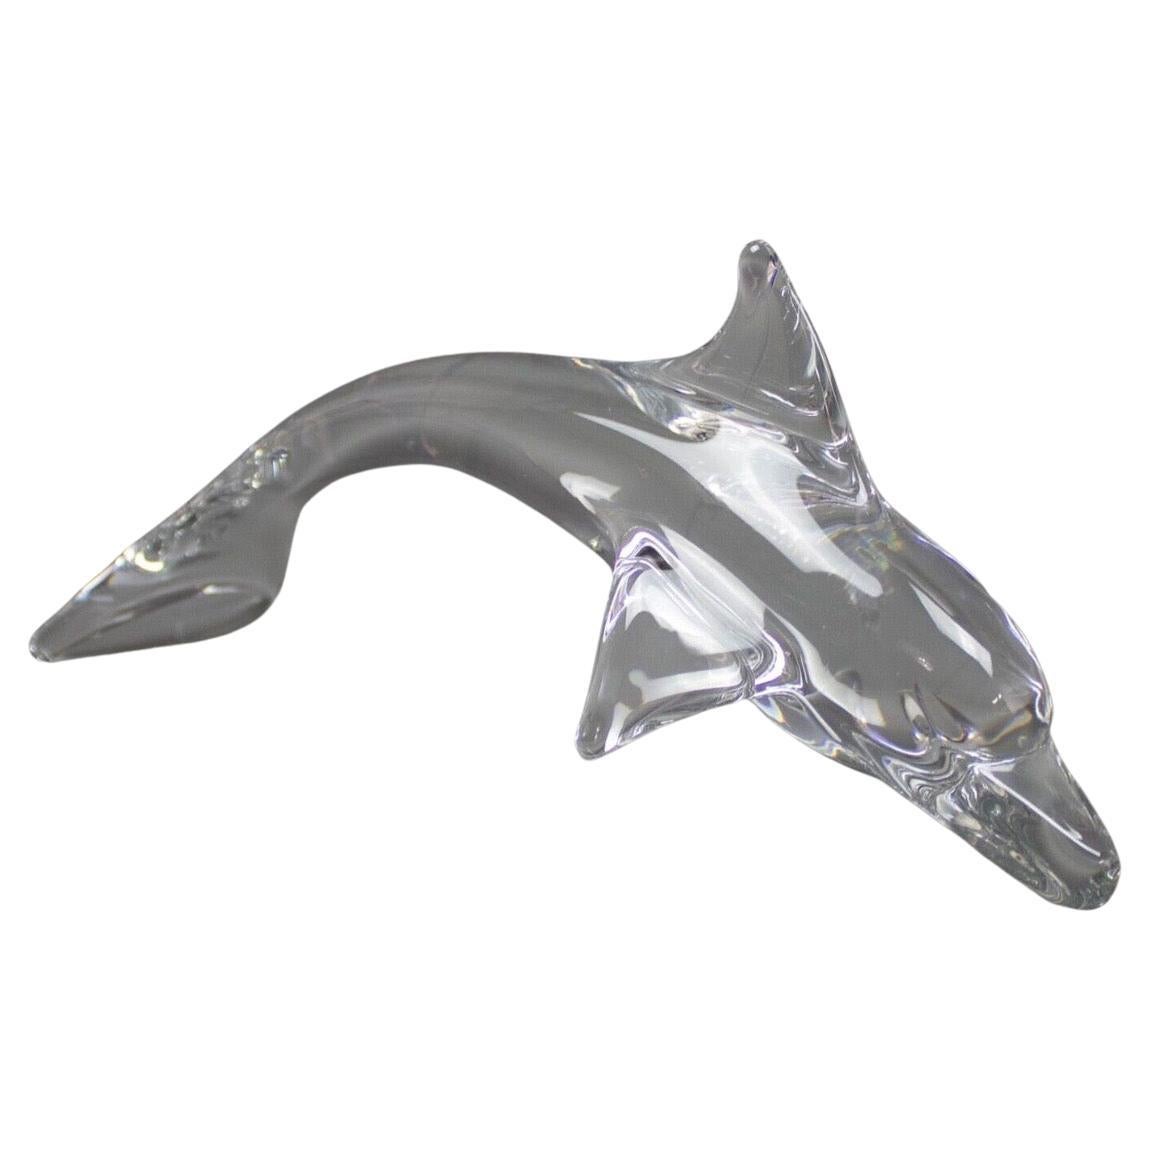 Wunderschöne Delphin-Skulptur aus klarem Kristallglas von Daum aus Frankreich, ca. 1980er Jahre. Das Stück ist in sehr gutem Vintage-Zustand ohne Chips oder Risse und misst 13 